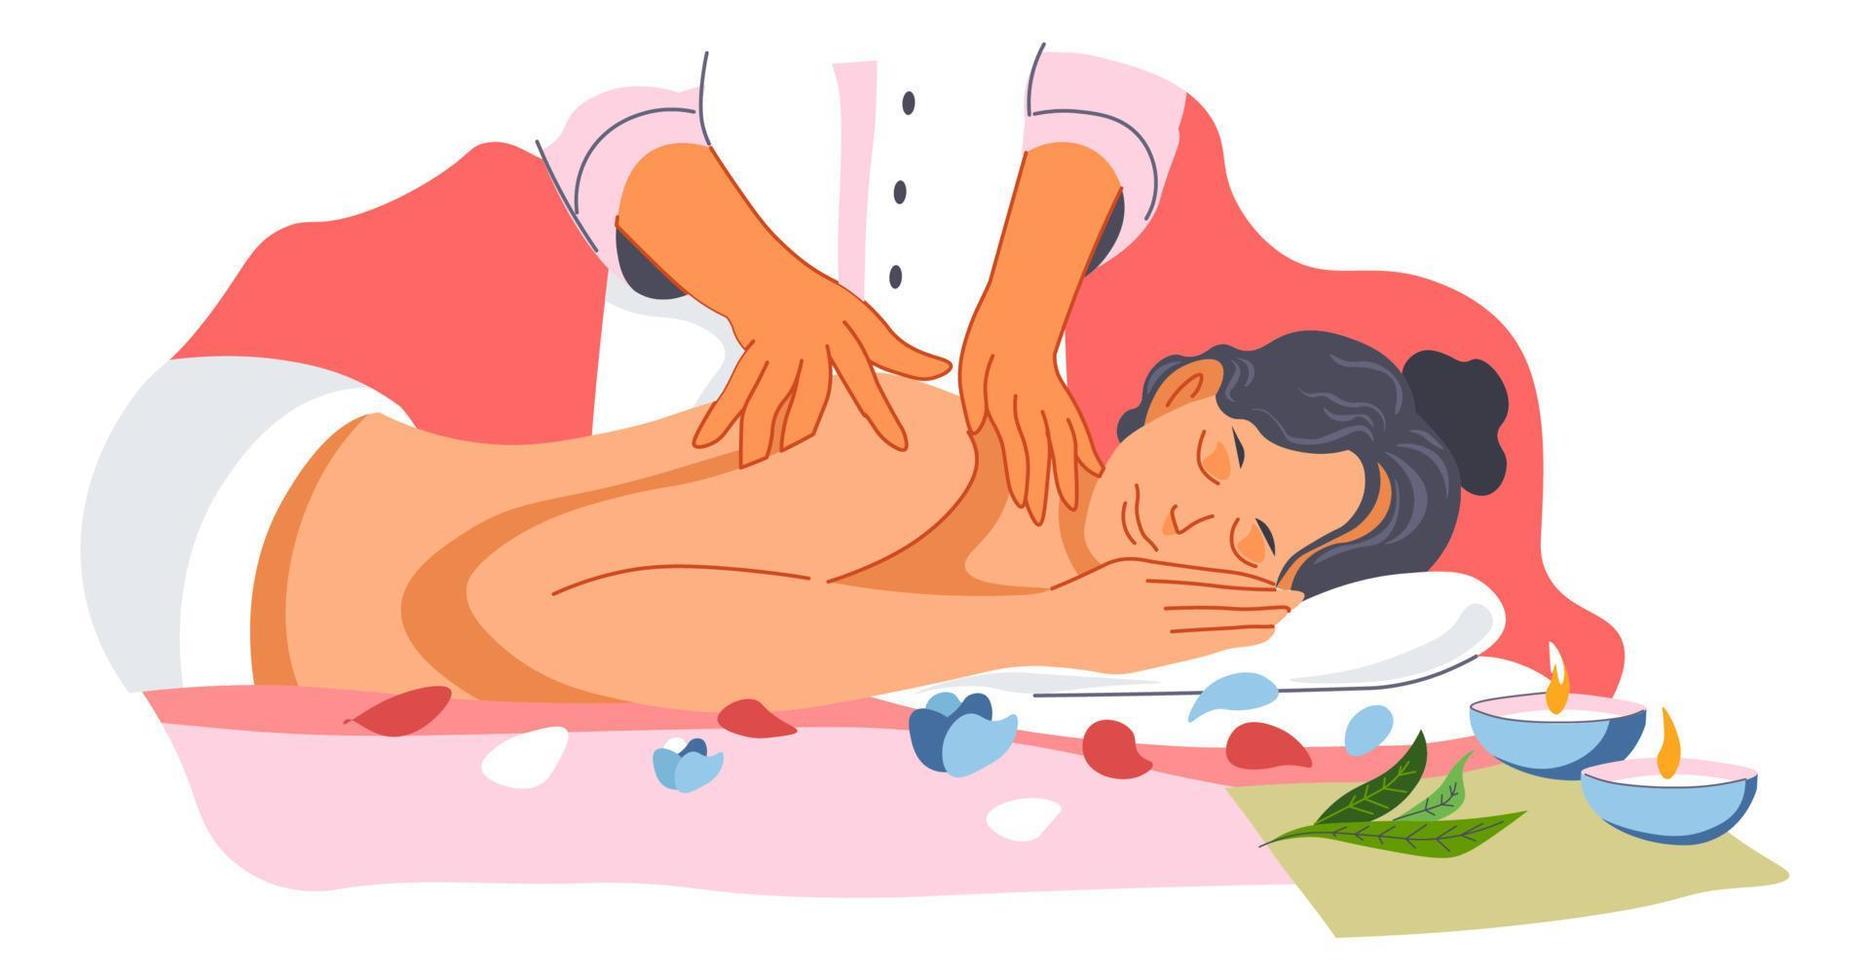 tillbaka massage i spa salong, hudvård behandling vektor